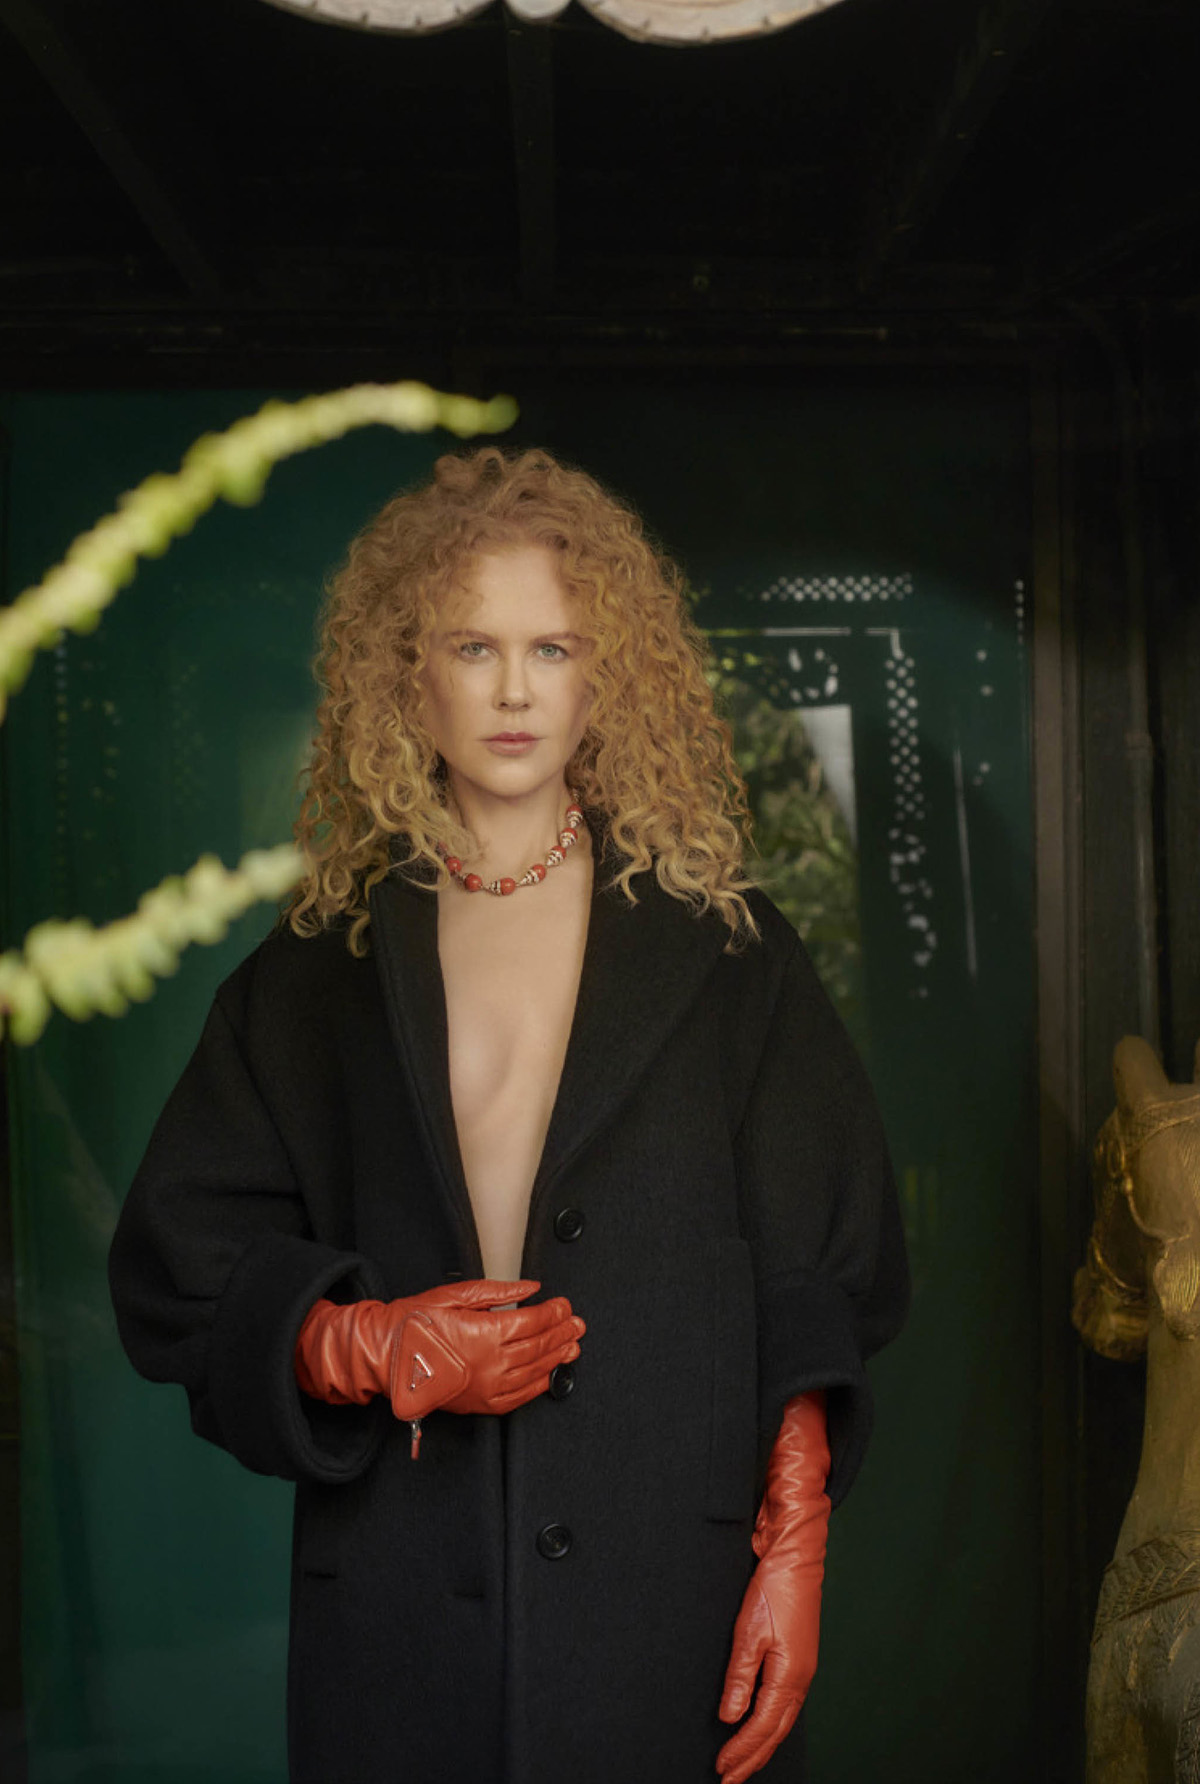 Nicole Kidman covers Harper’s Bazaar US October 2021 by Collier Schorr